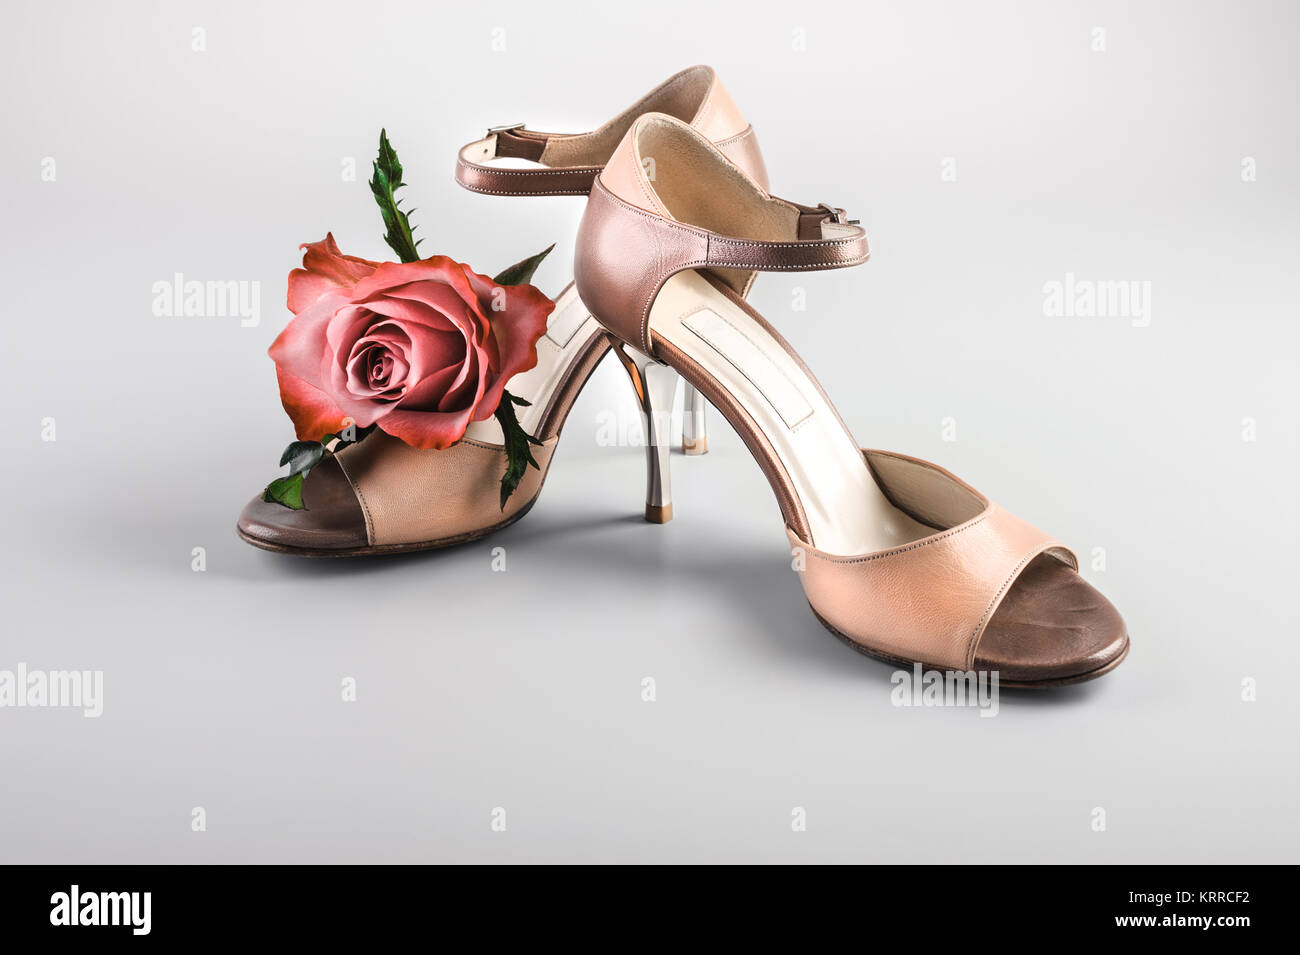 Chaussures de tango argentin avec une rose sur fond neutre Banque D'Images